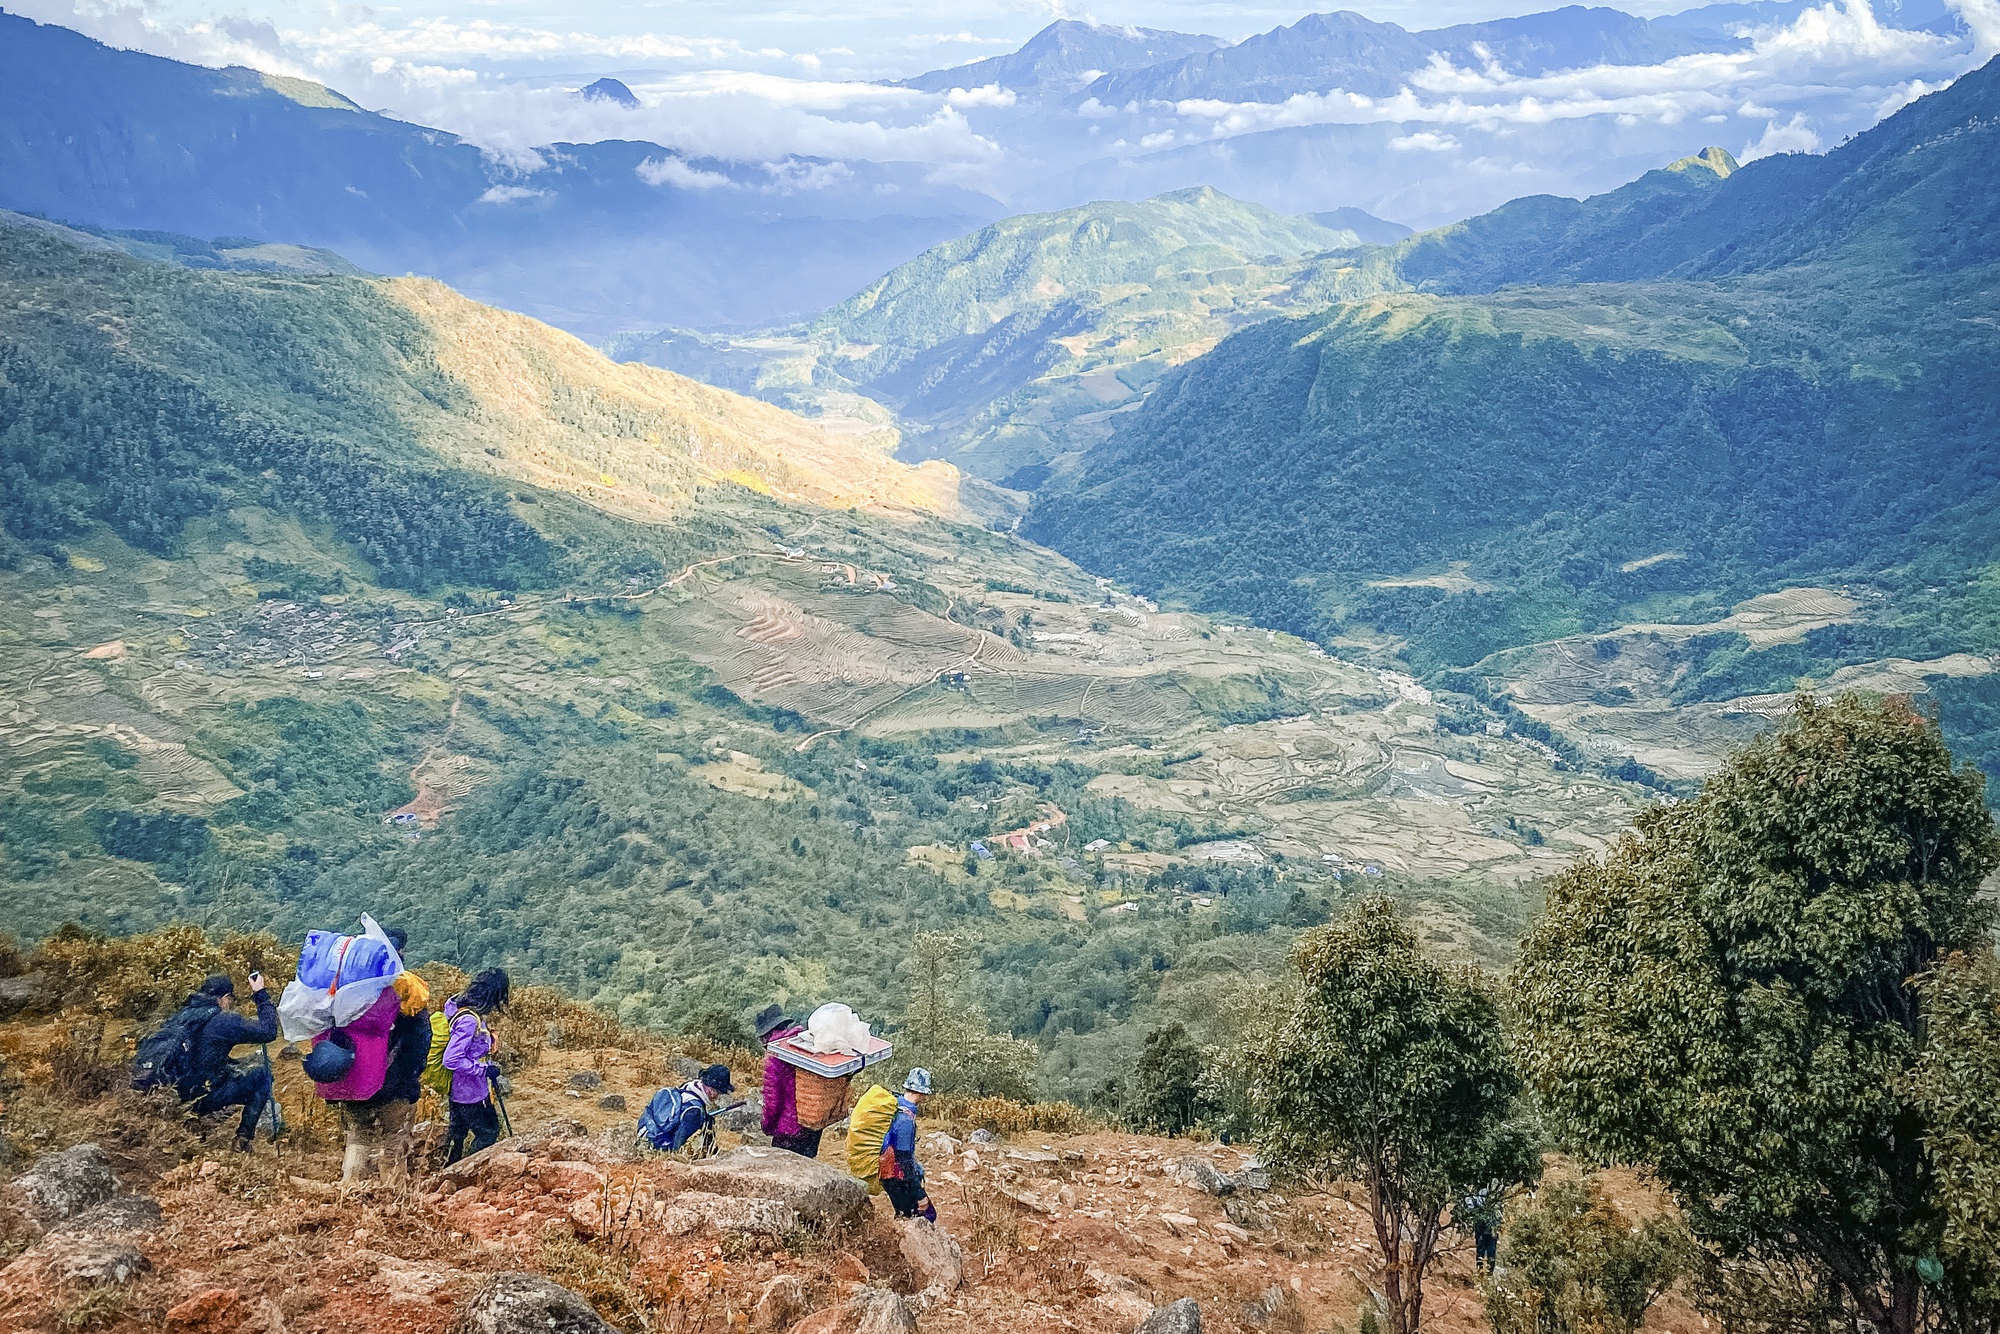 Ngắm rừng già nguyên sinh với thảm thực vật đẹp như mơ tại đỉnh núi cao thứ 9 Việt Nam - Ảnh 1.